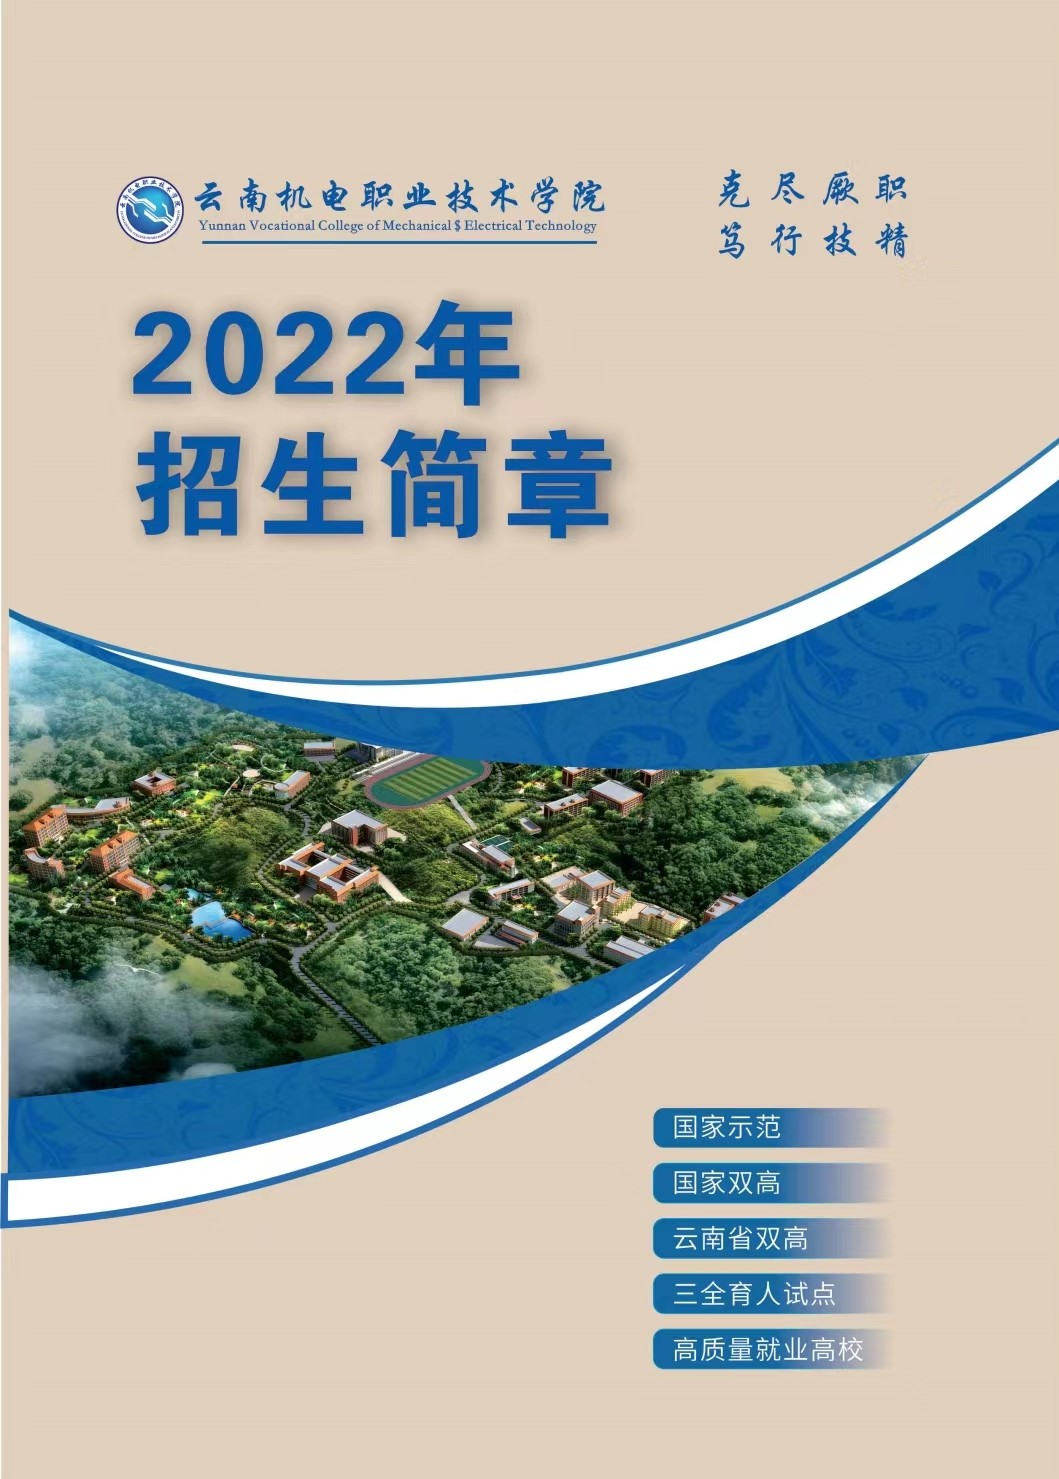 2022年云南机电职业技术学院招生简章